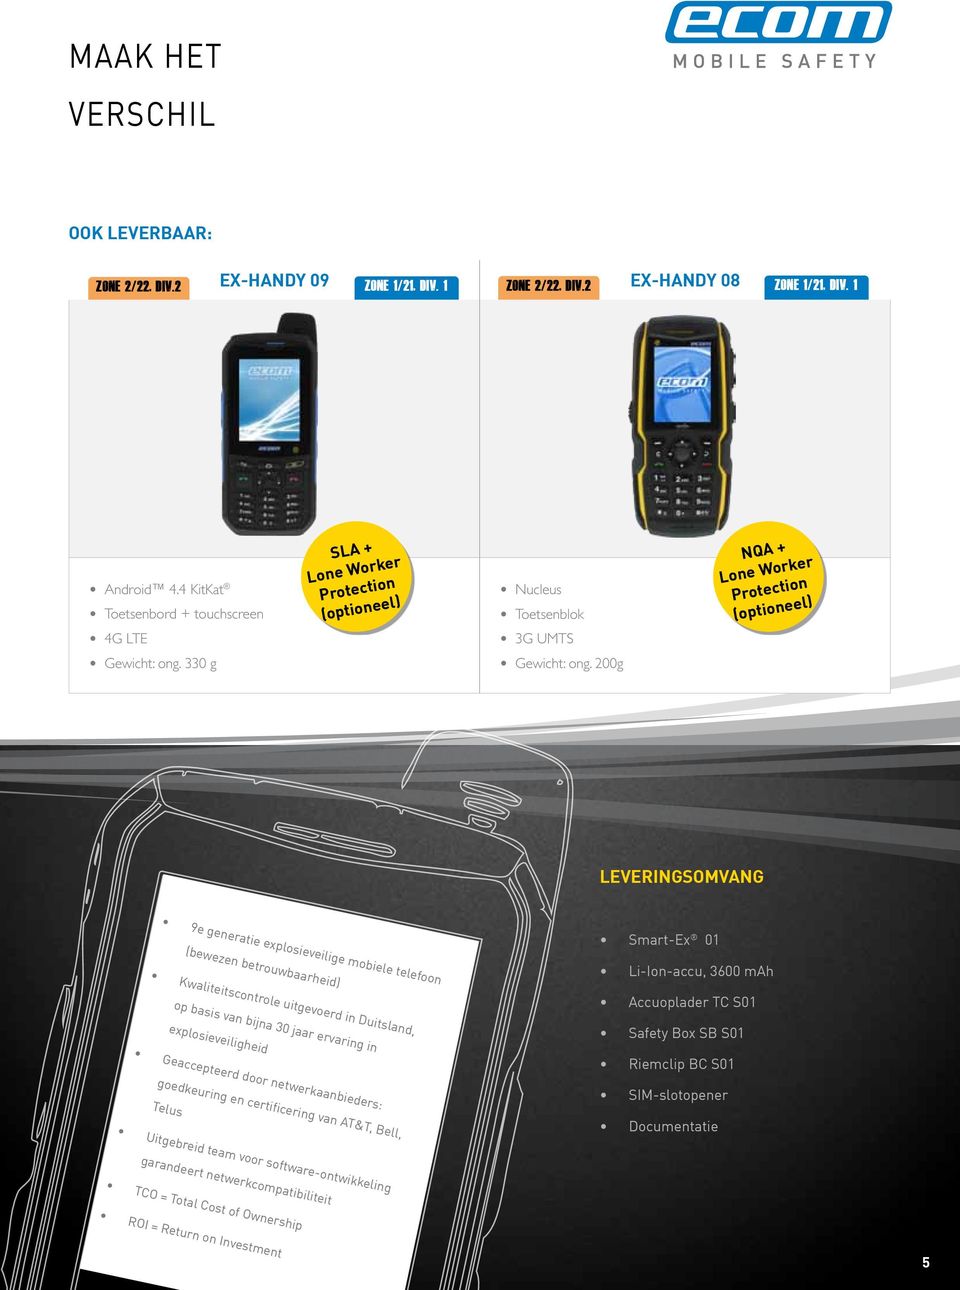 200g LEVERINGSOMVANG 9e generatie explosieveilige mobiele telefoon Smart-Ex 01 (bewezen betrouwbaarheid) Li-Ion-accu, 3600 mah Kwaliteitscontrole uitgevoerd in Duitsland, op basis van bijna 30 jaar